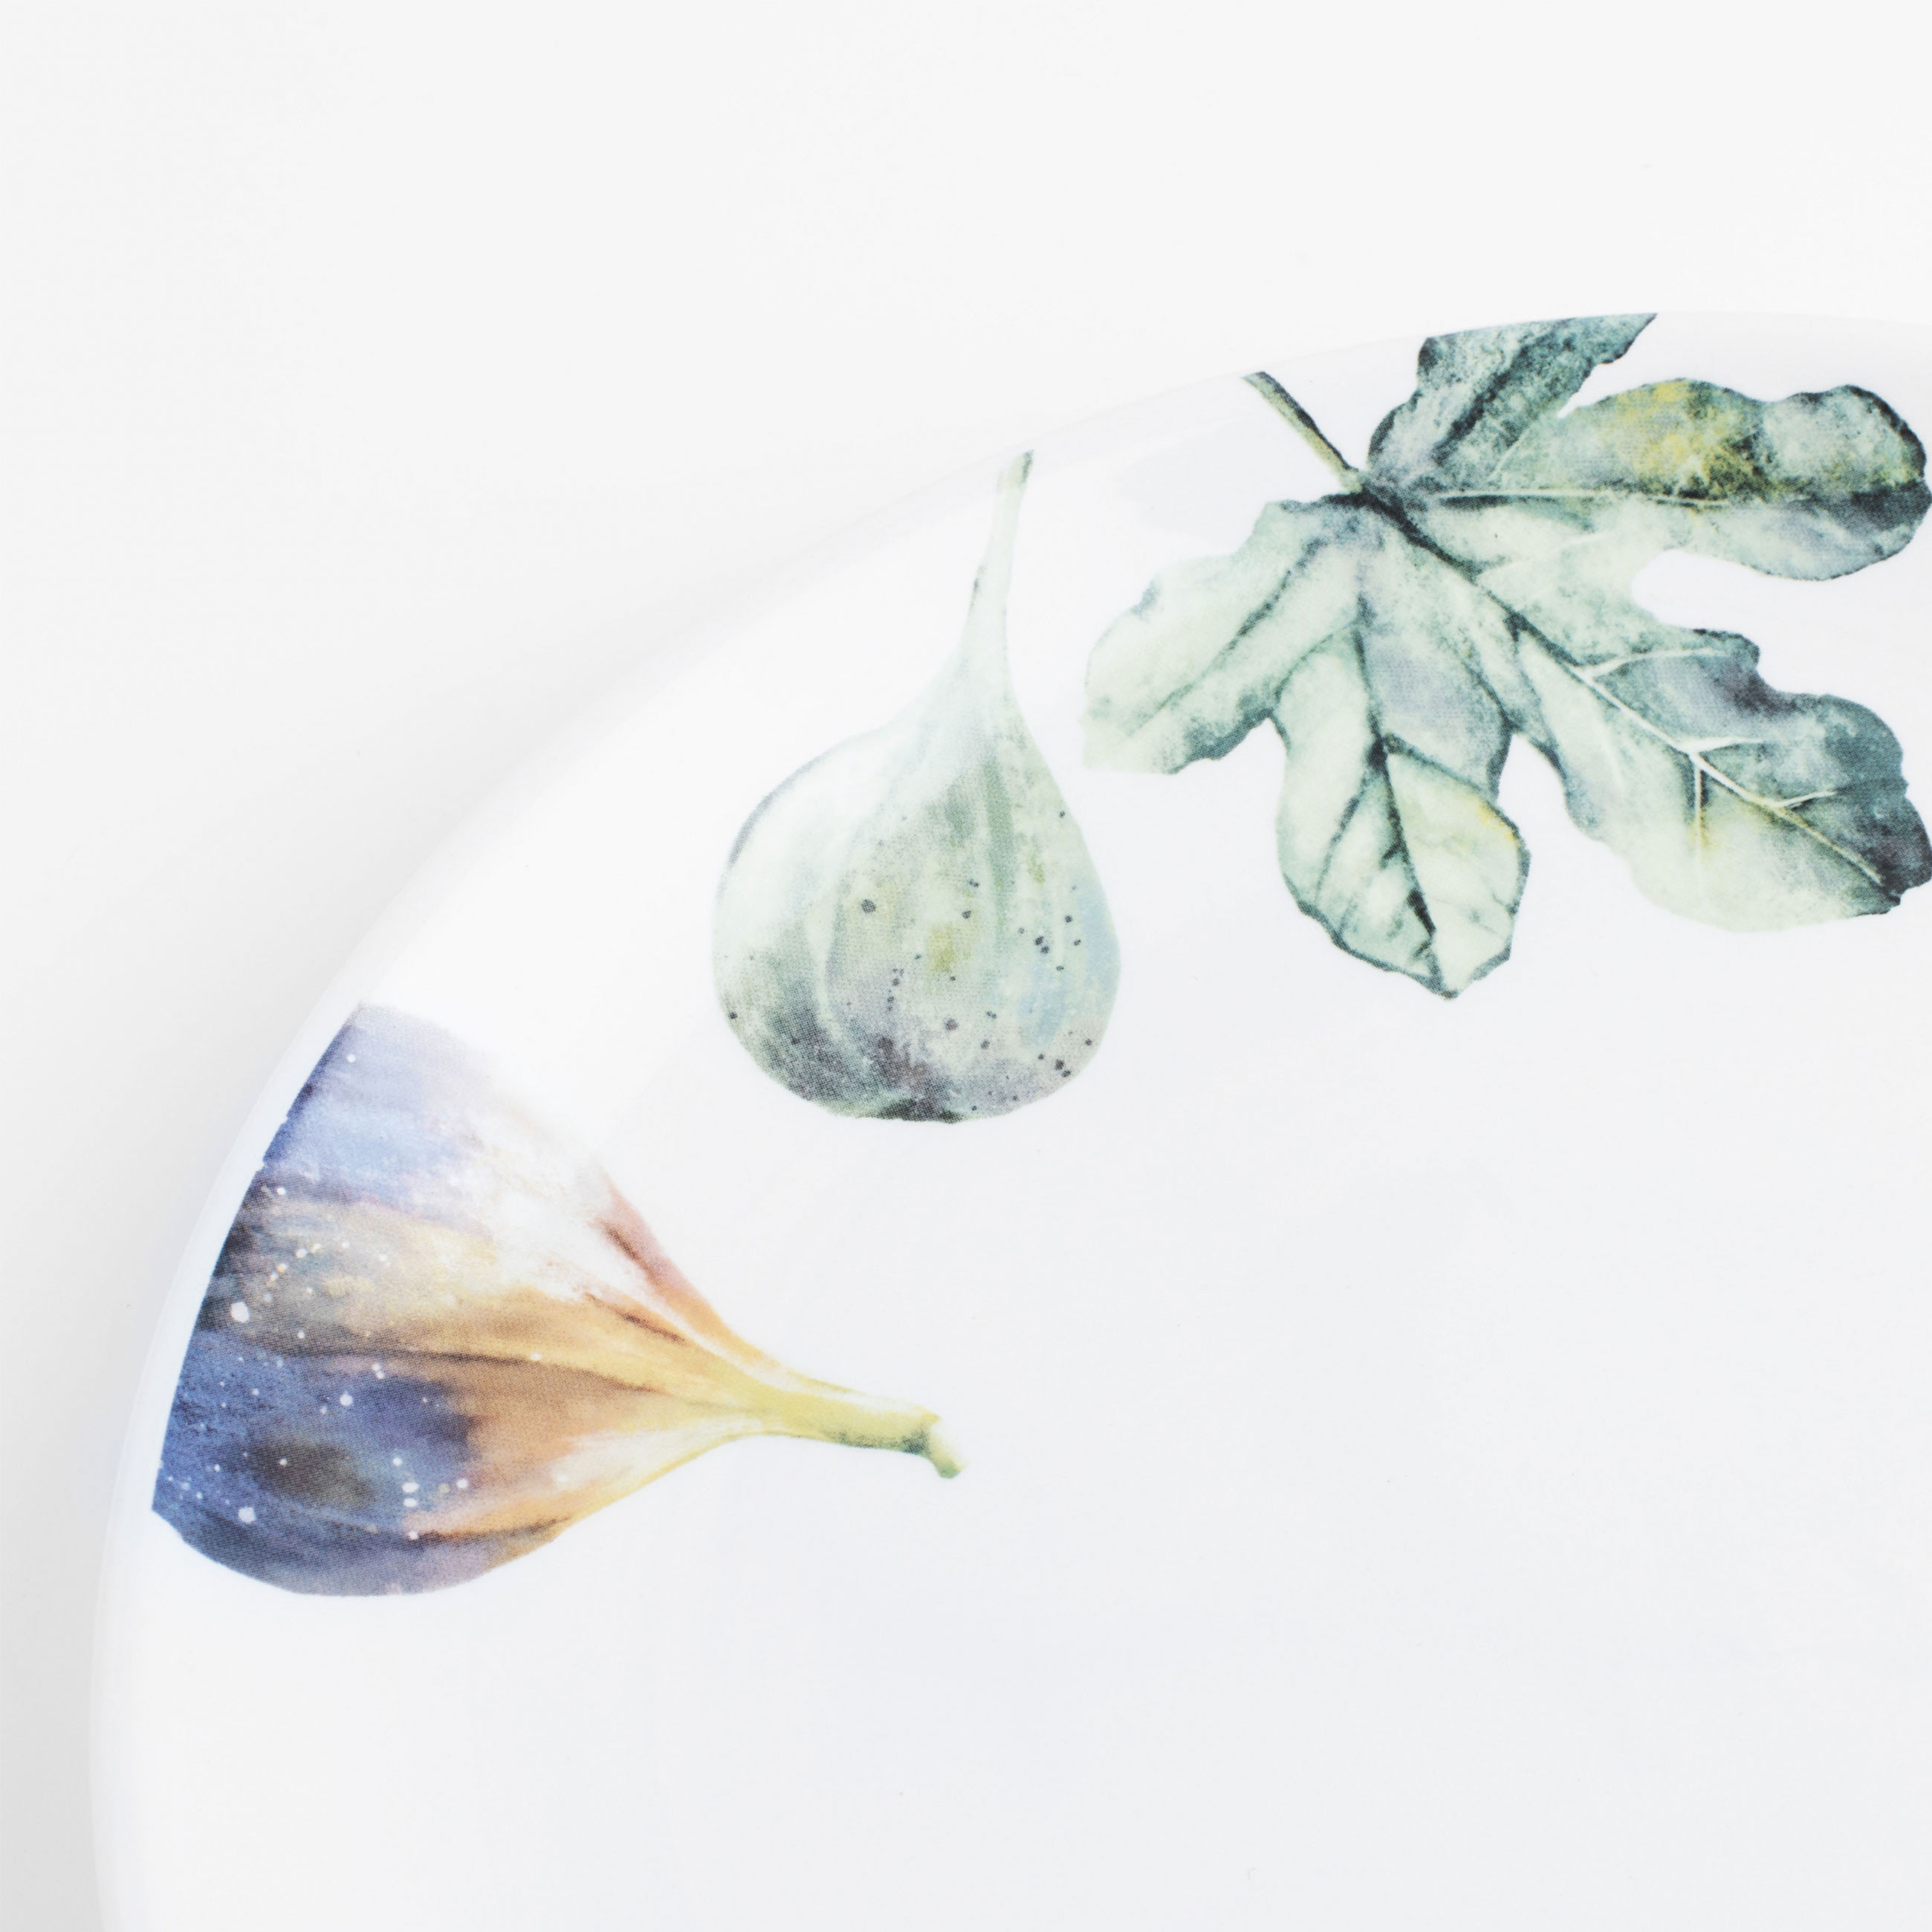 Тарелка обеденная, 26 см, керамика, белая, Инжир и груша, Fruit garden изображение № 4